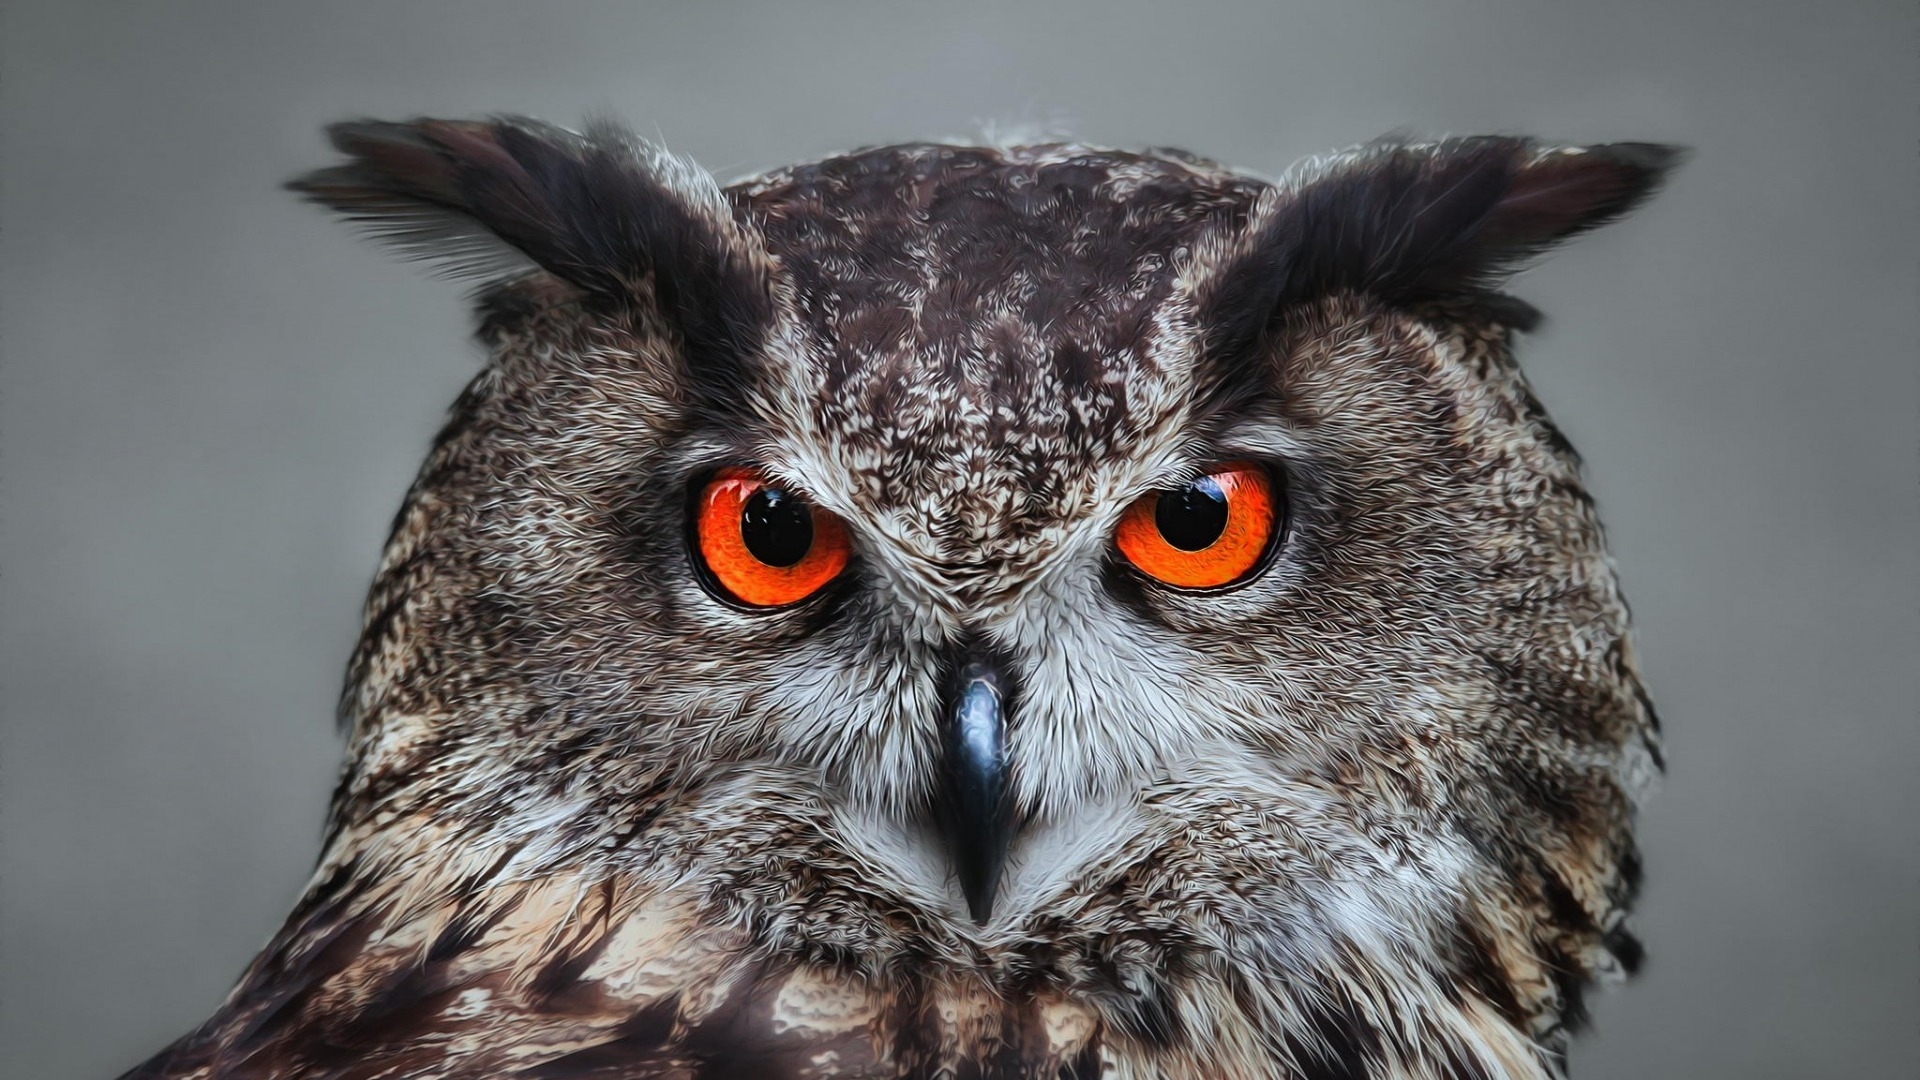 Orange Eyed Owl for 1920 x 1080 HDTV 1080p resolution